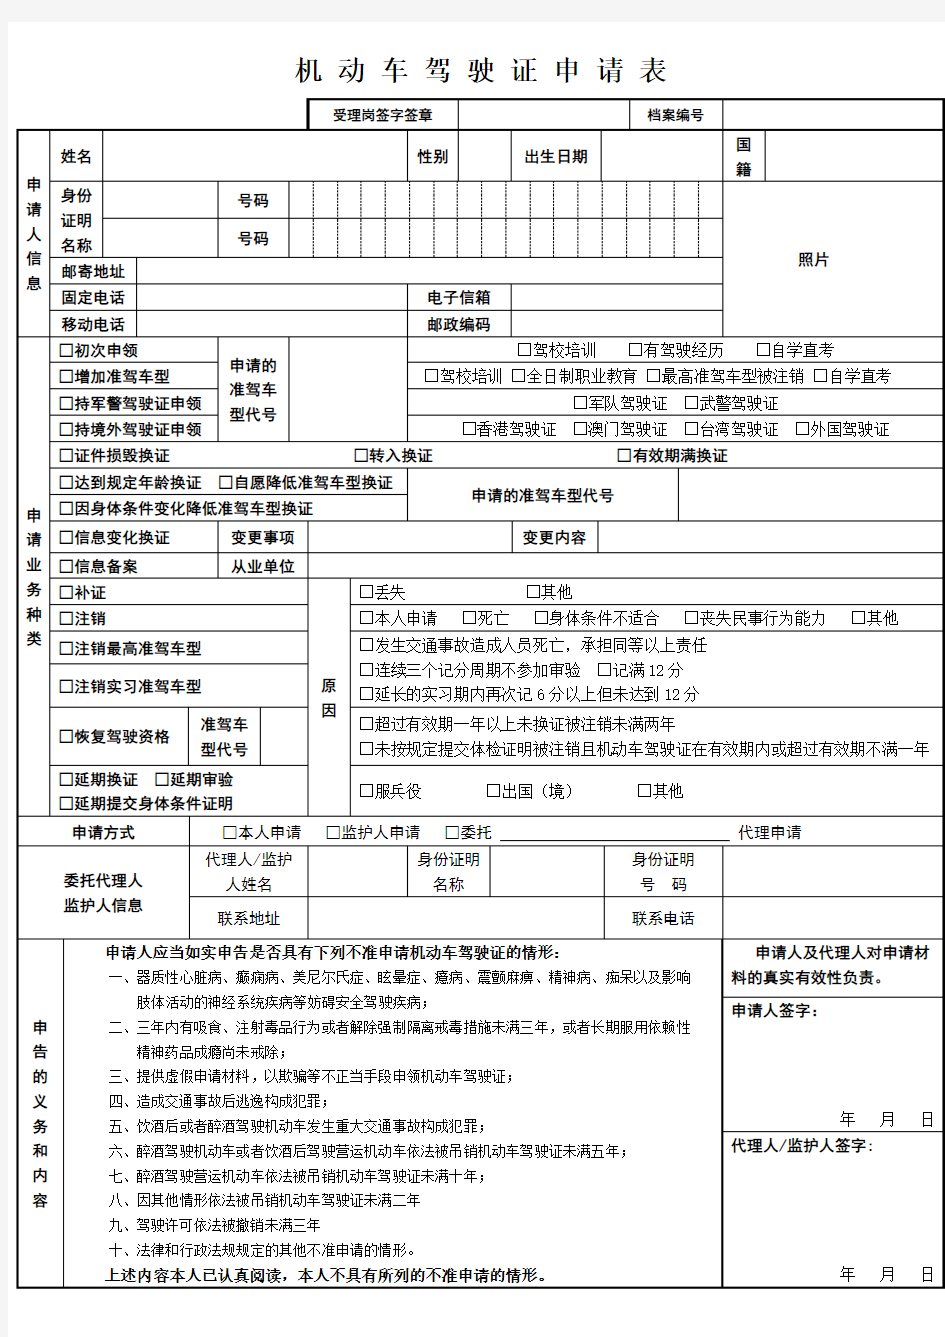 西安市机动车驾驶证申请表2019年版